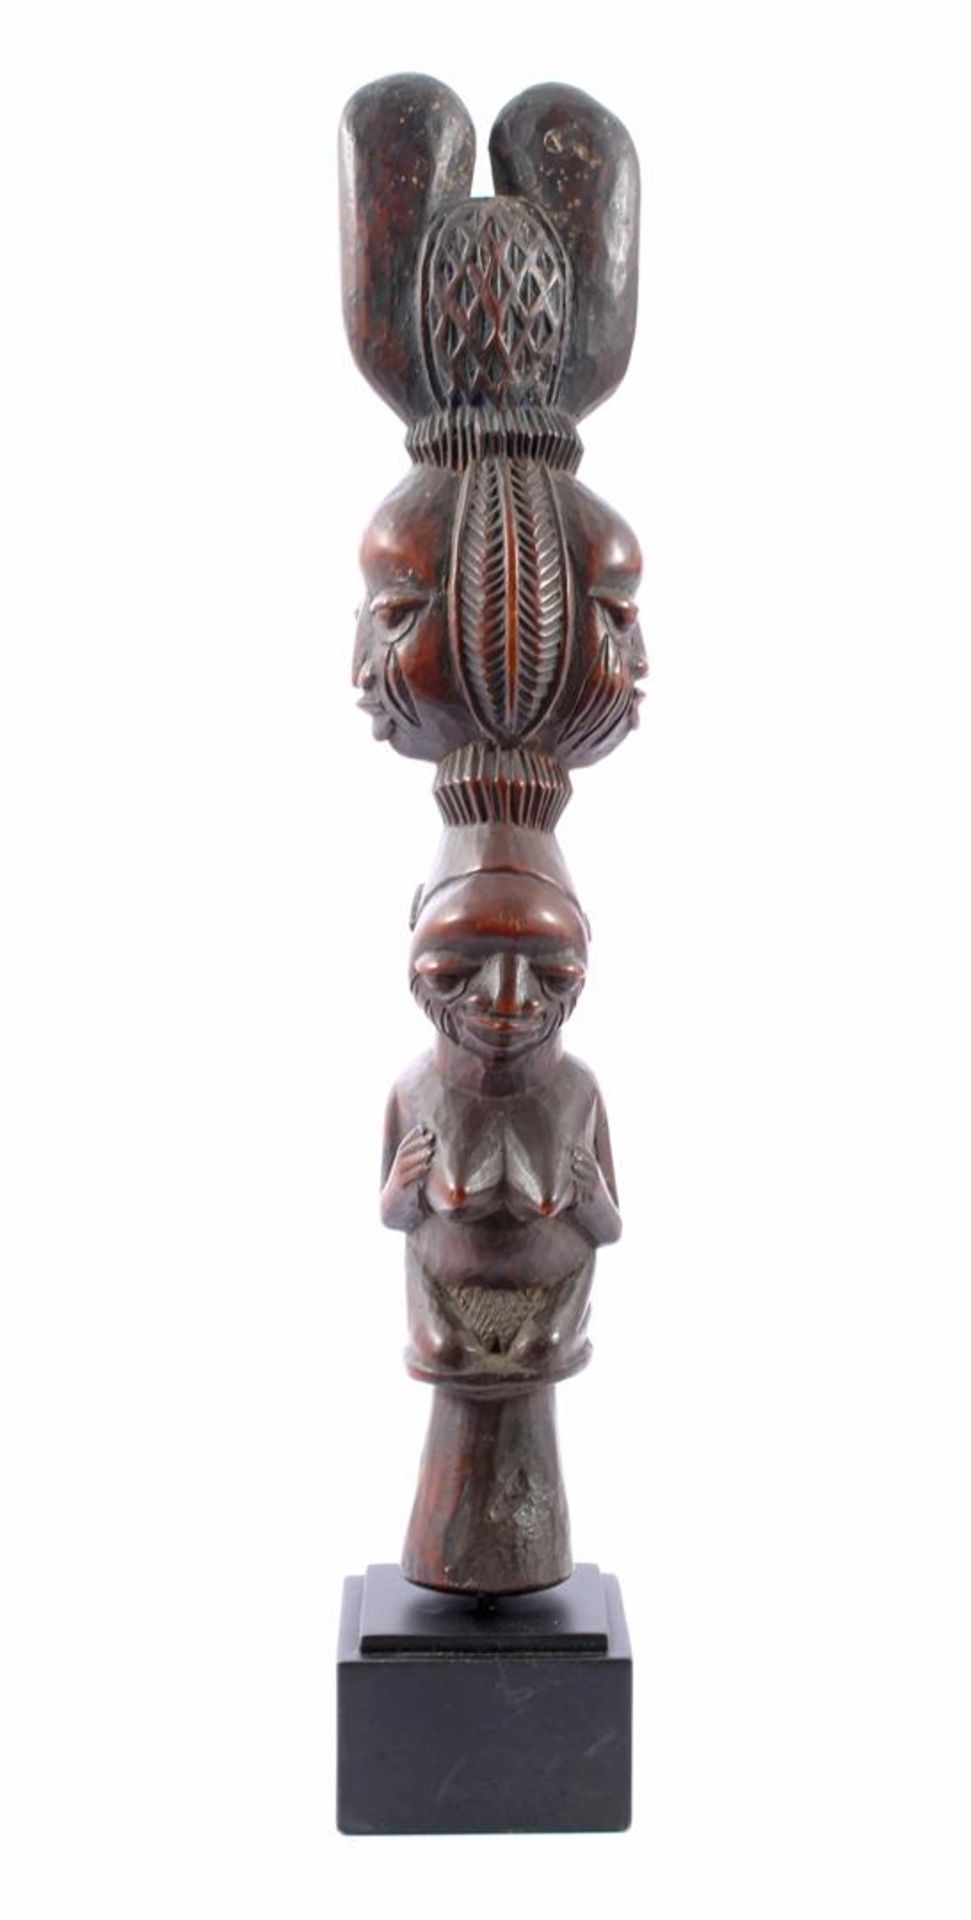 Houten Django staf Yoruba Congo, op sokkel totaal 38 cm hoog - Bild 2 aus 4